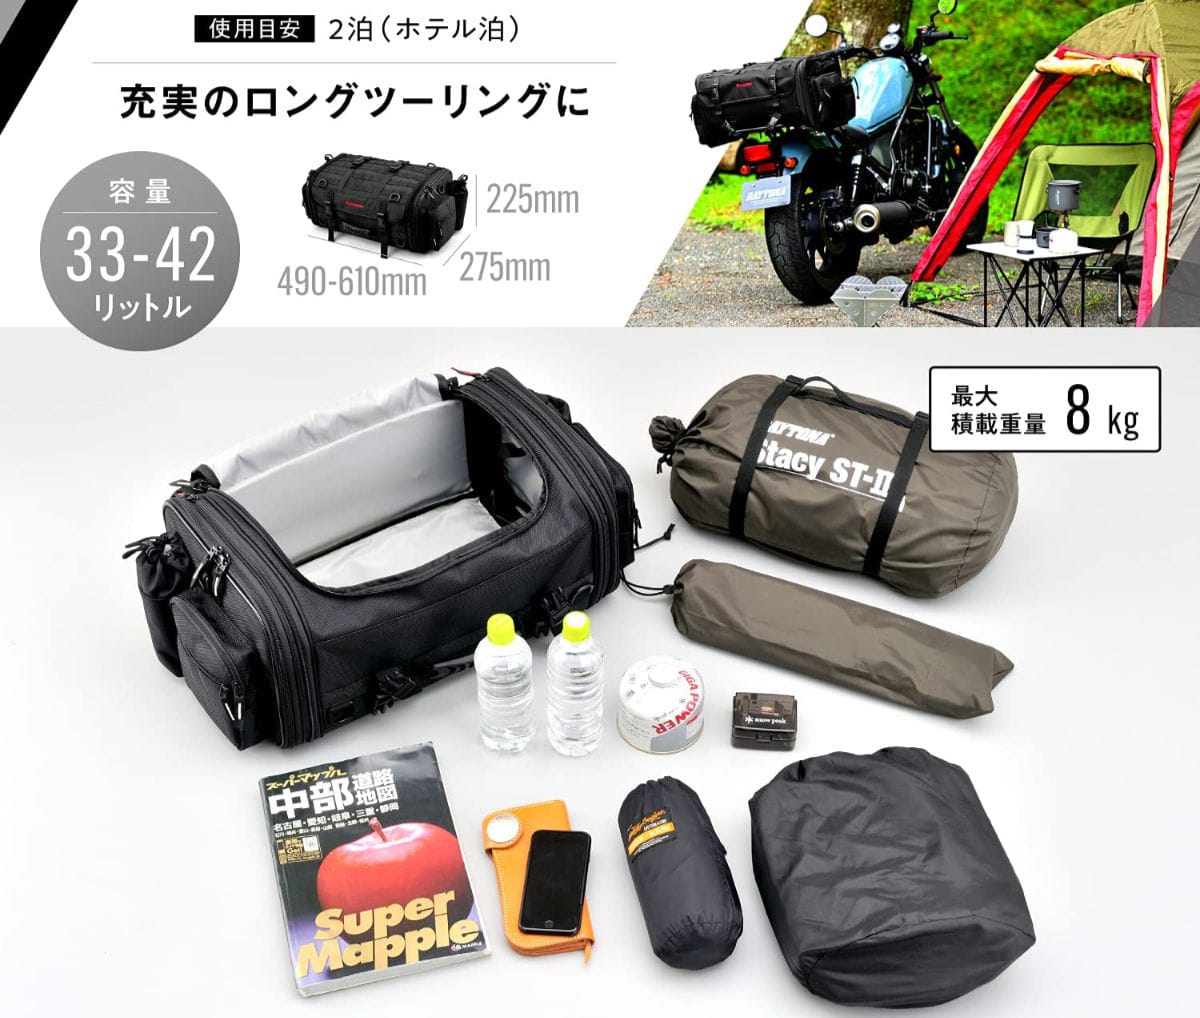 Camping seatbag HB 01